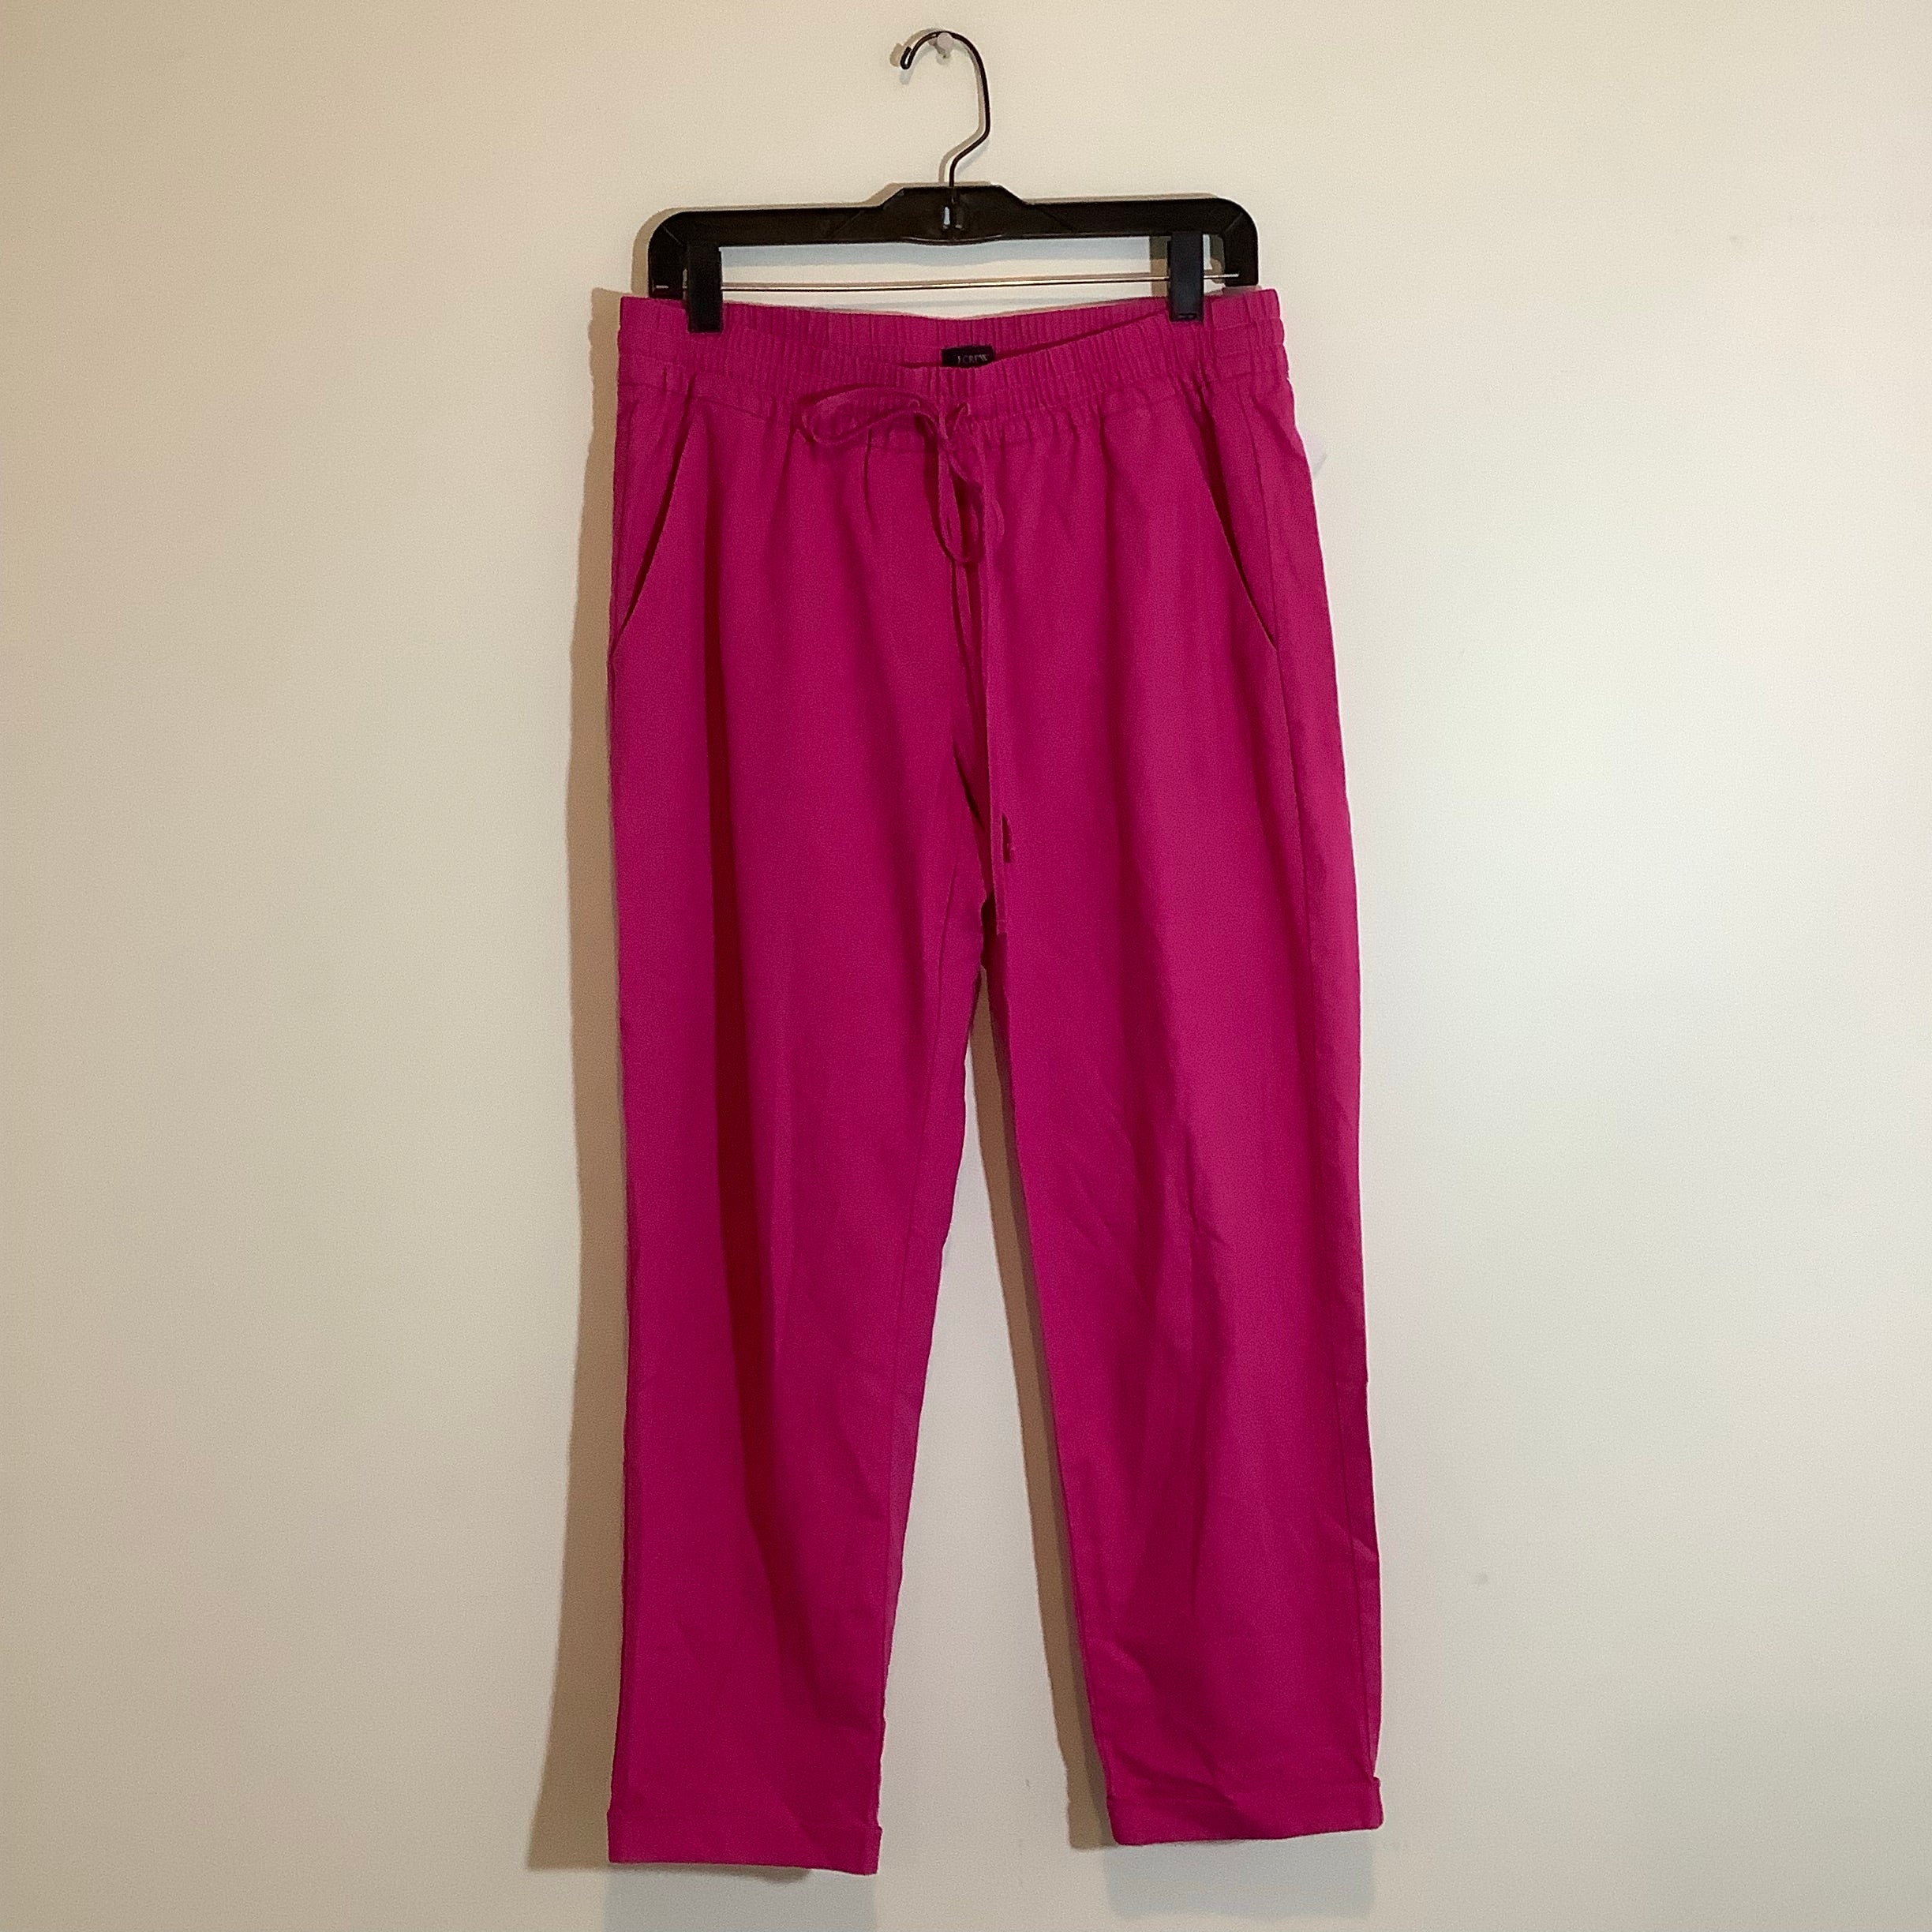 J.Crew Pink Pants Size 6